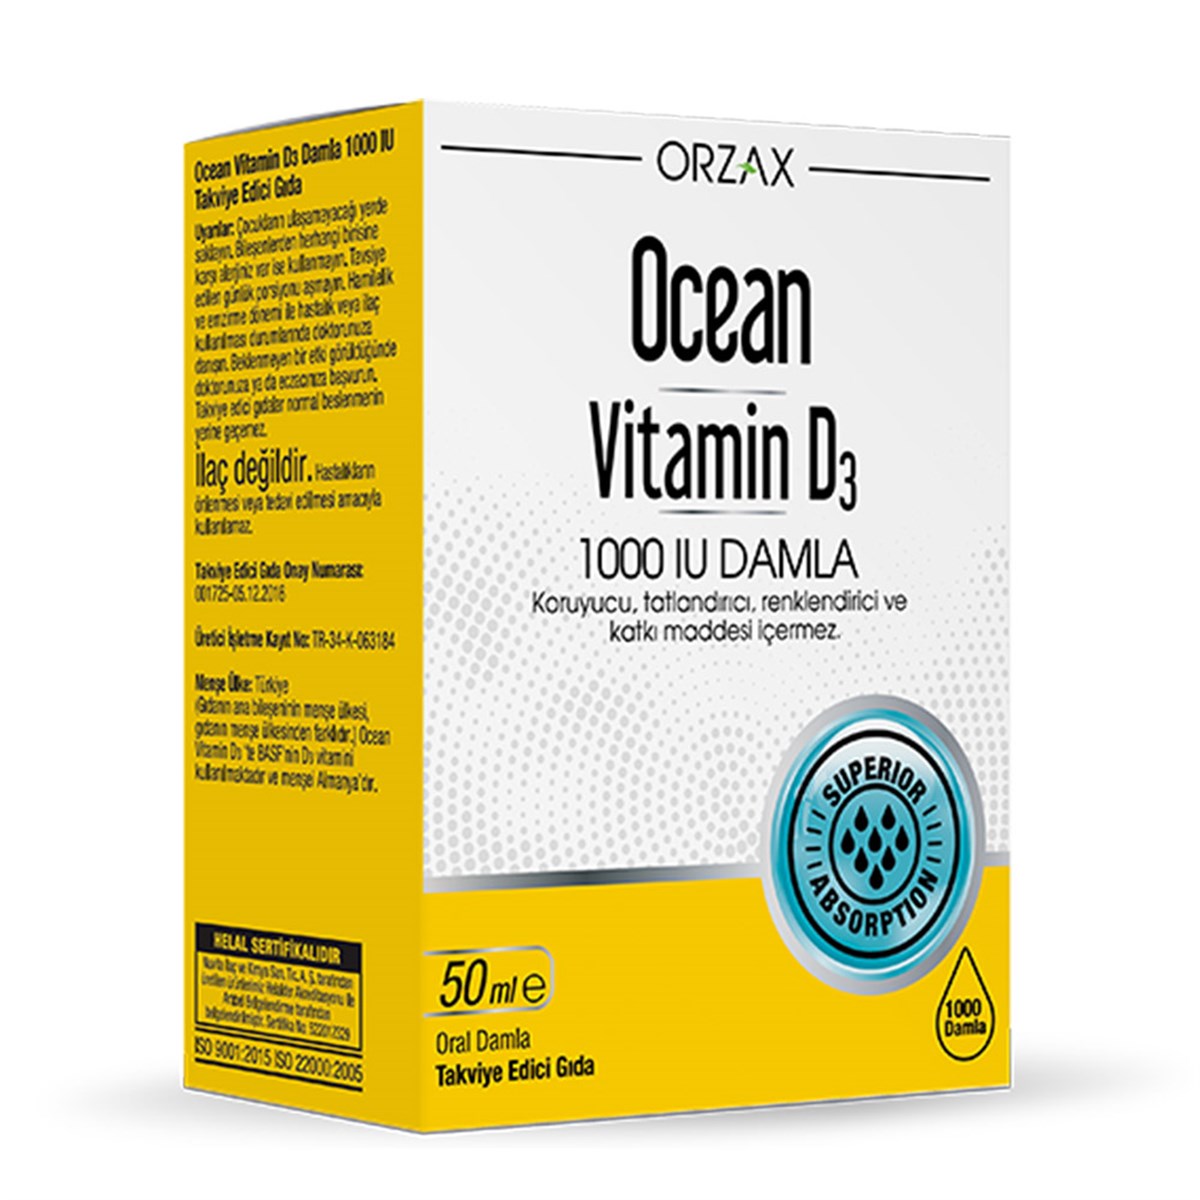 Ocean Vitamin 1000 IU Damla